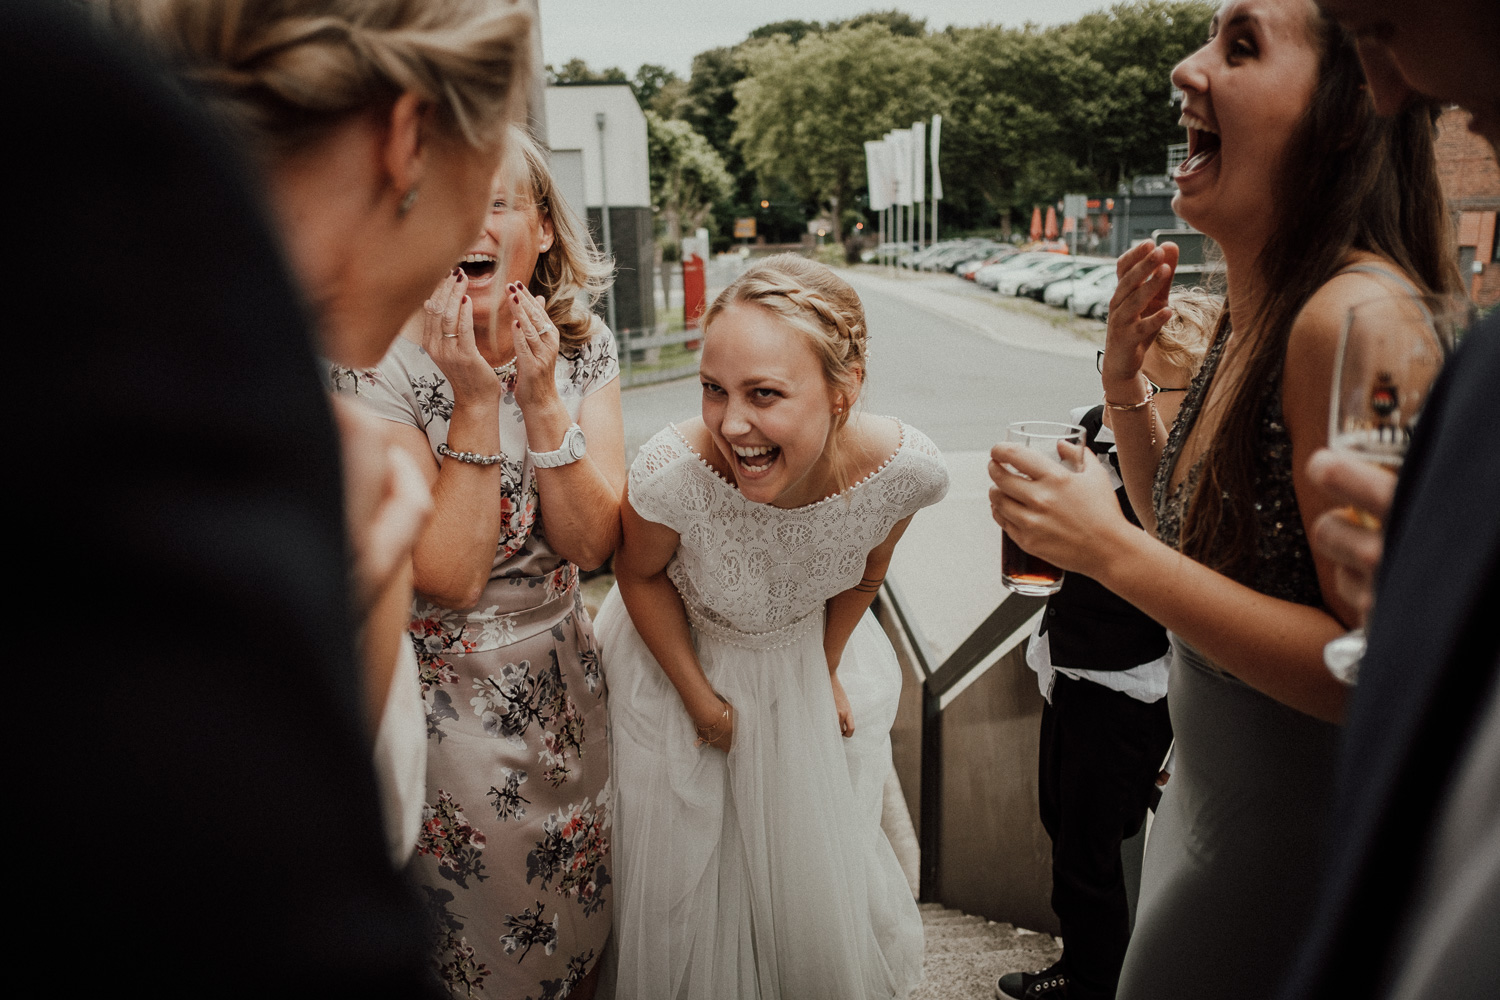 Rangefinder-Rising-Stars-Wedding-Photography-2018-Hochzeitsfotograf-Köln-Kevin-Biberbach-Hochzeitsfoto-Hohchzeitsreportage-Köln-NRW-Bonn-Düsseldorf-Heiraten-in-Köln-Preise-Empfehlung-Fotograf-Ehrenfeld-Hochzeitslocation-22.jpg